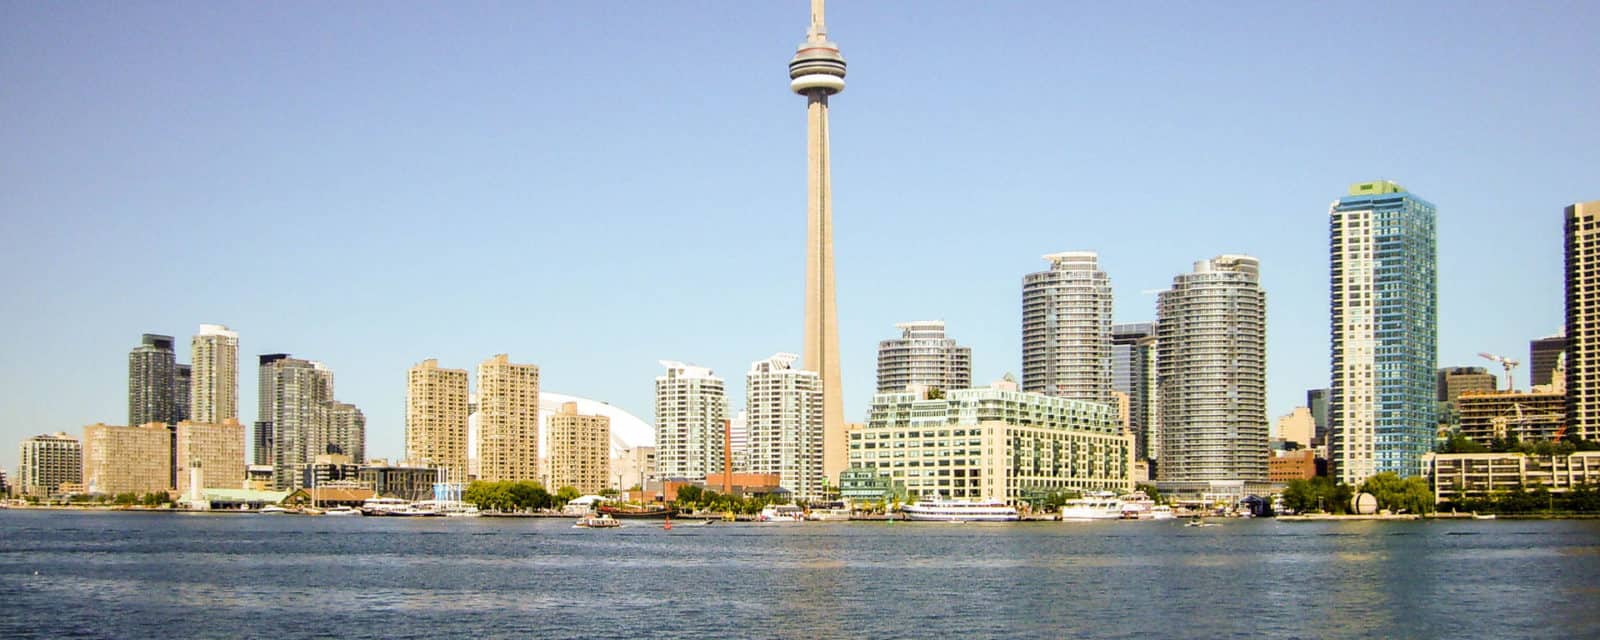 Von Toronto an den Atlantik – Durch vier kanadische Provinzen bis nach Halifax